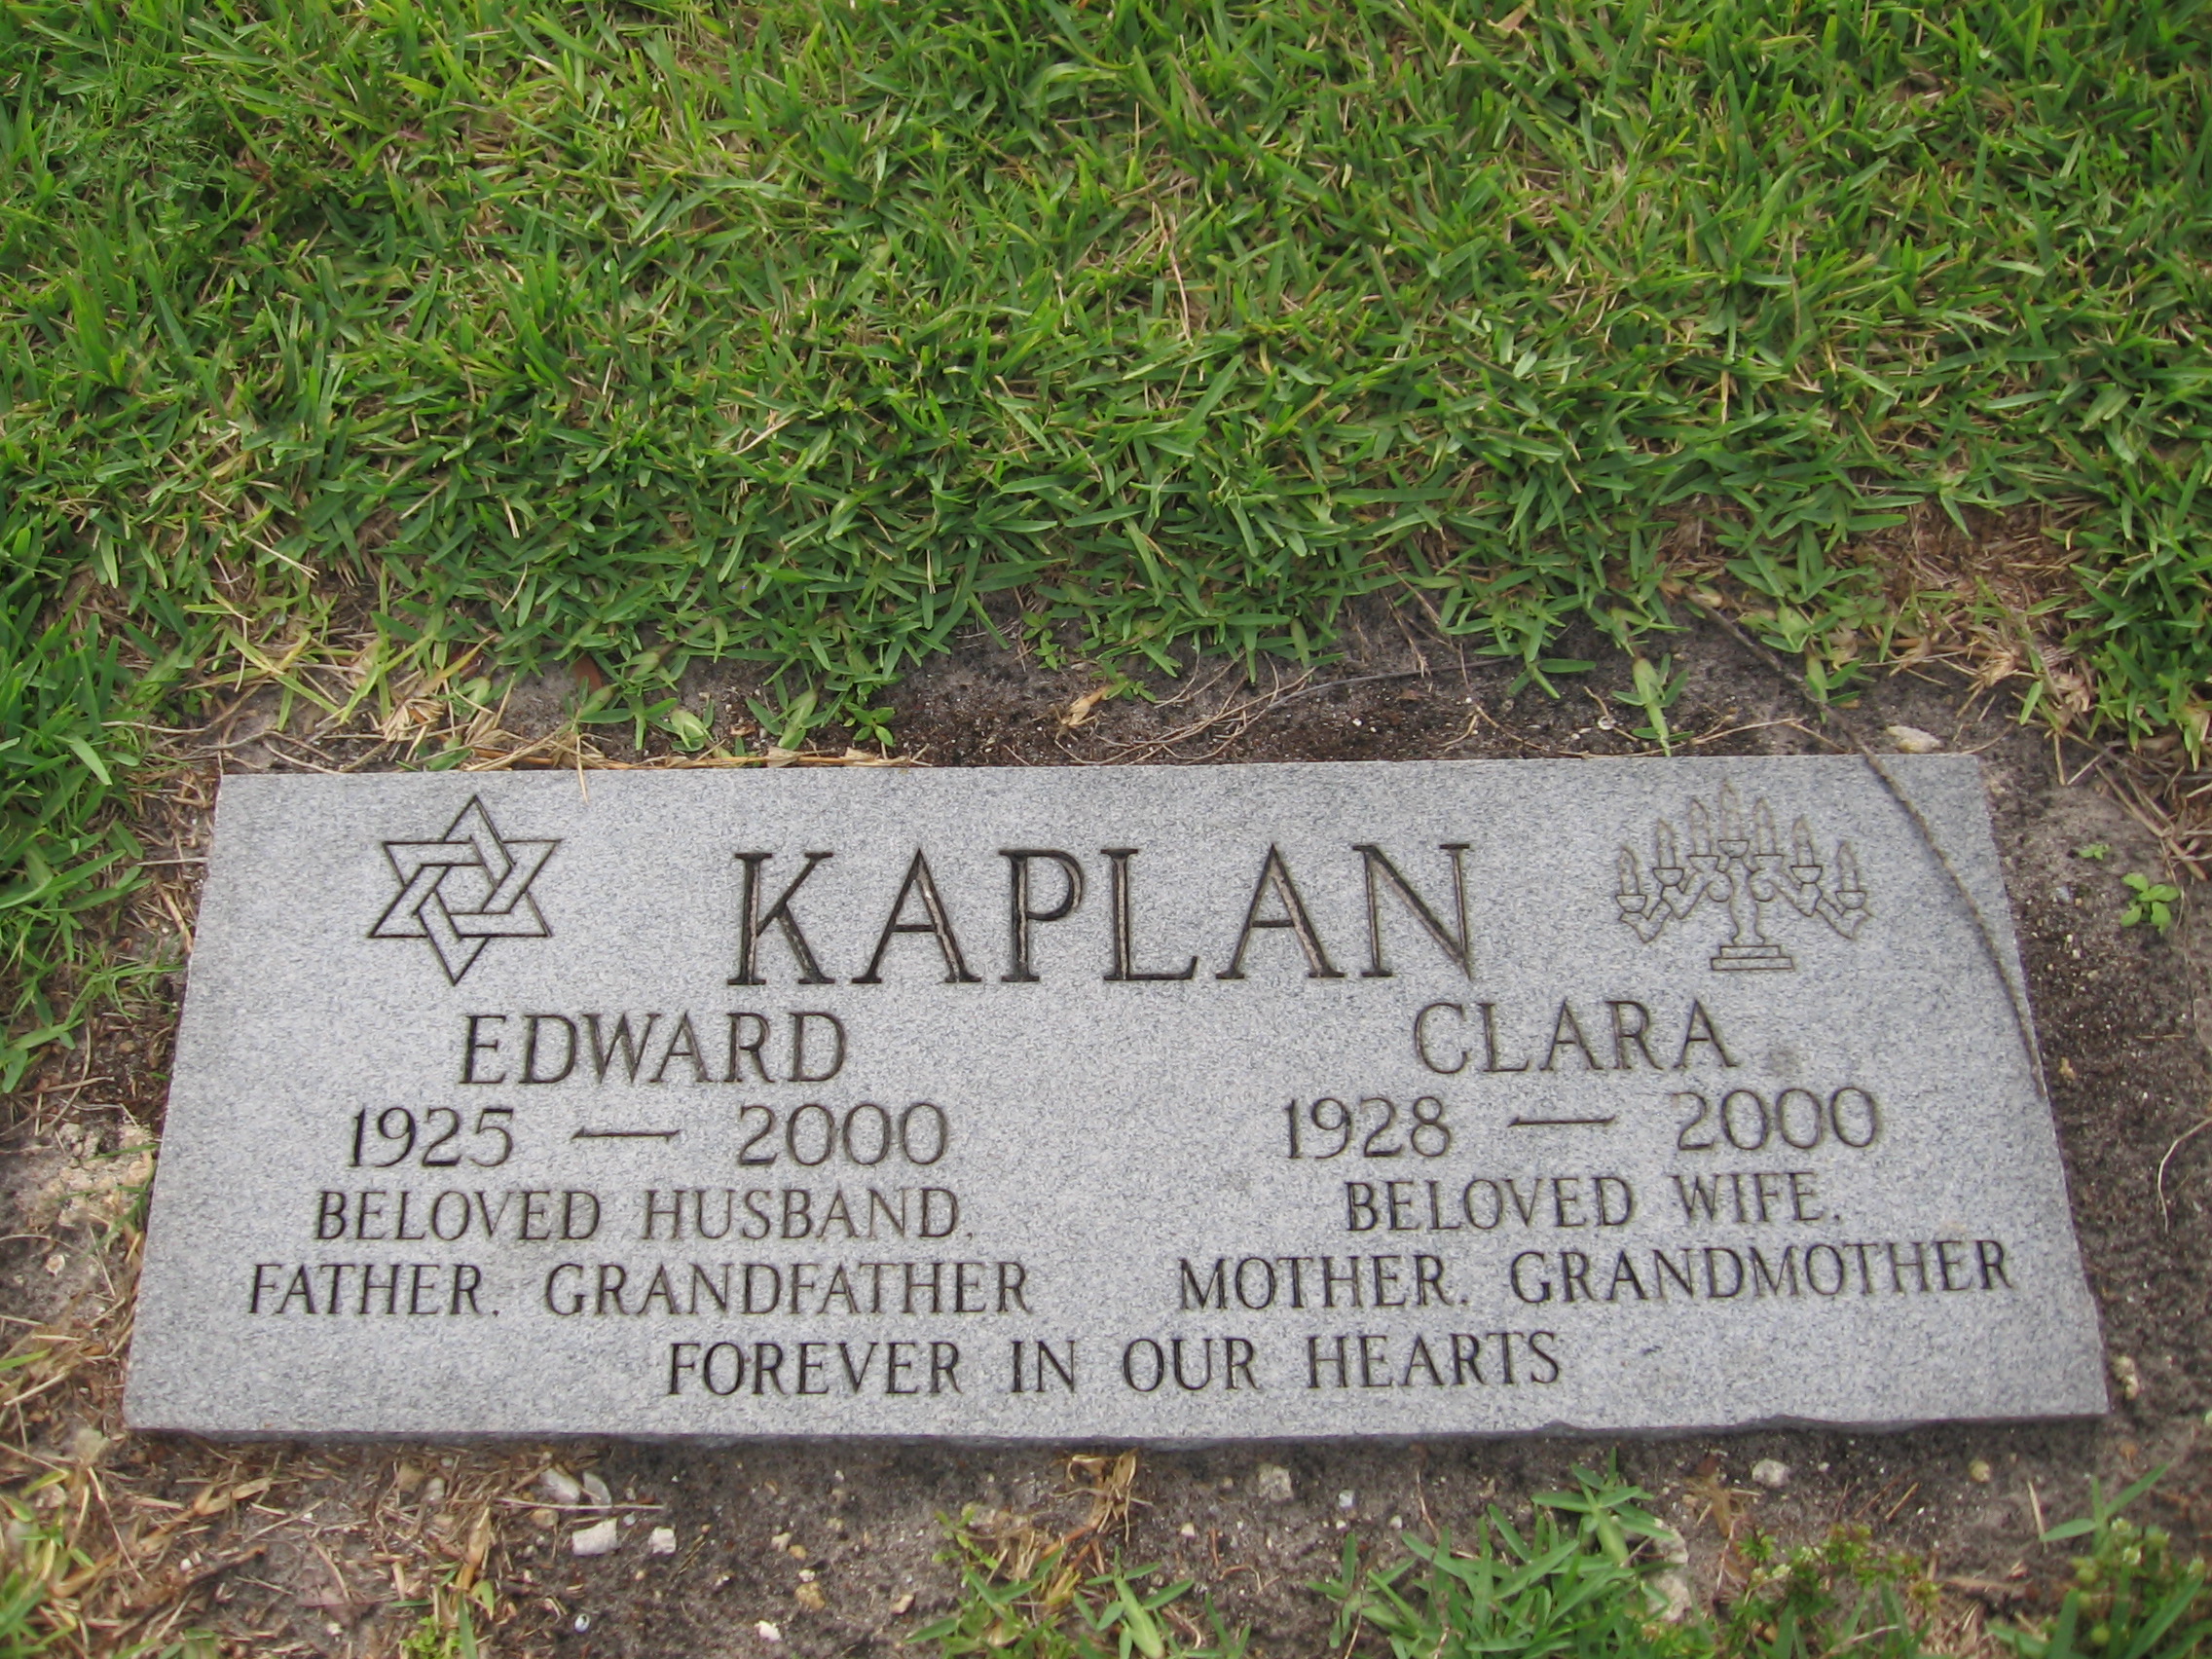 Edward Kaplan